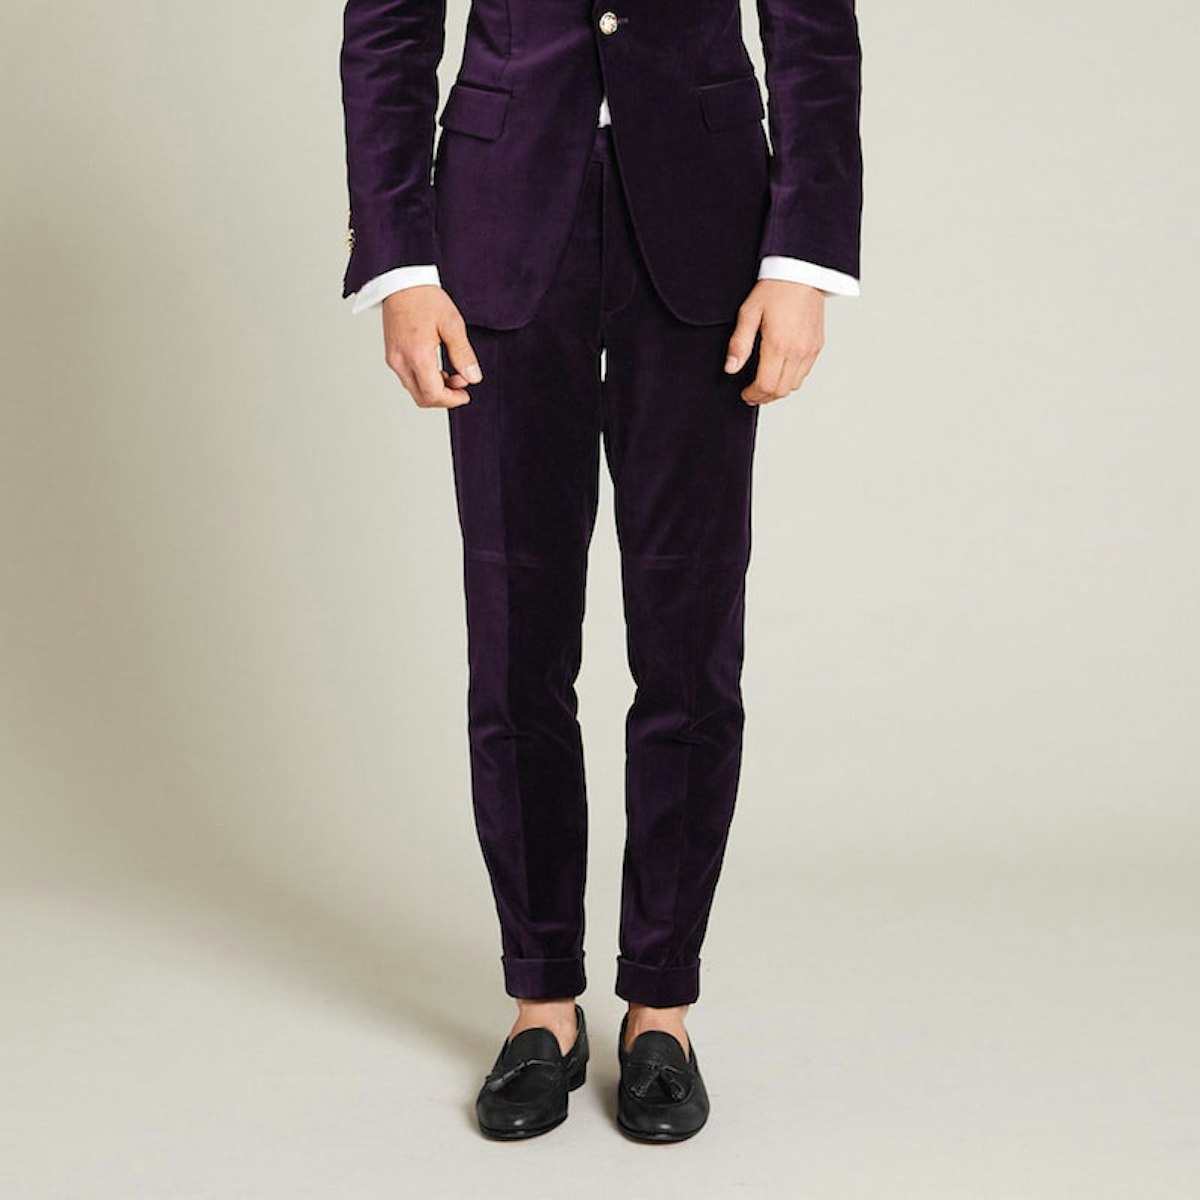 InStitchu Collection The Napier Purple Velvet Pants